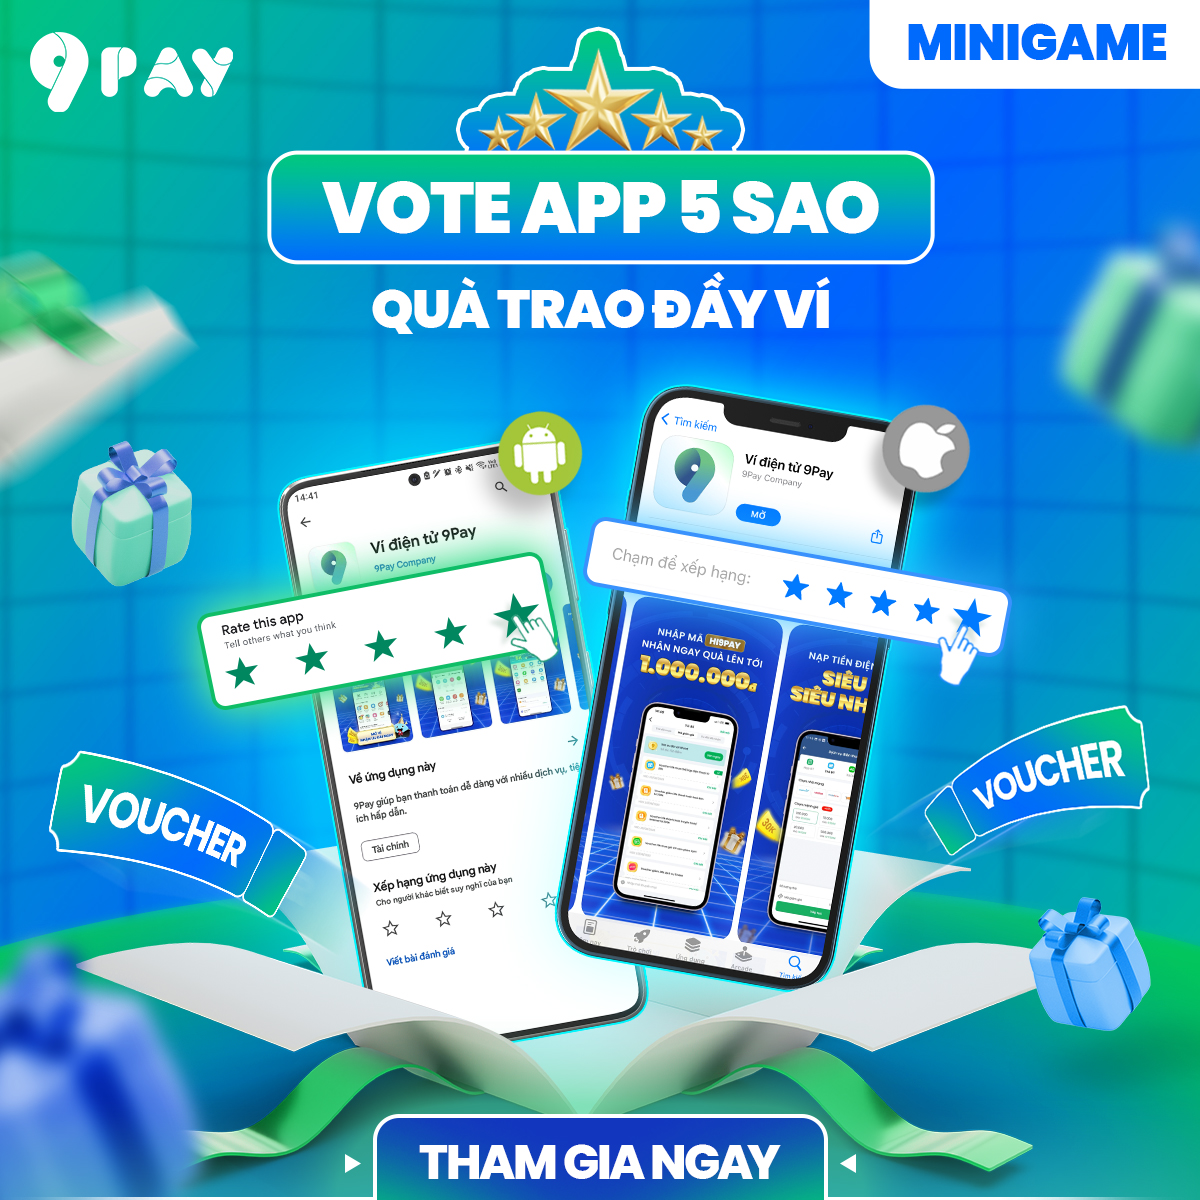 YN0-minigame-vote-app-5-sao-qua-trao-day-vi